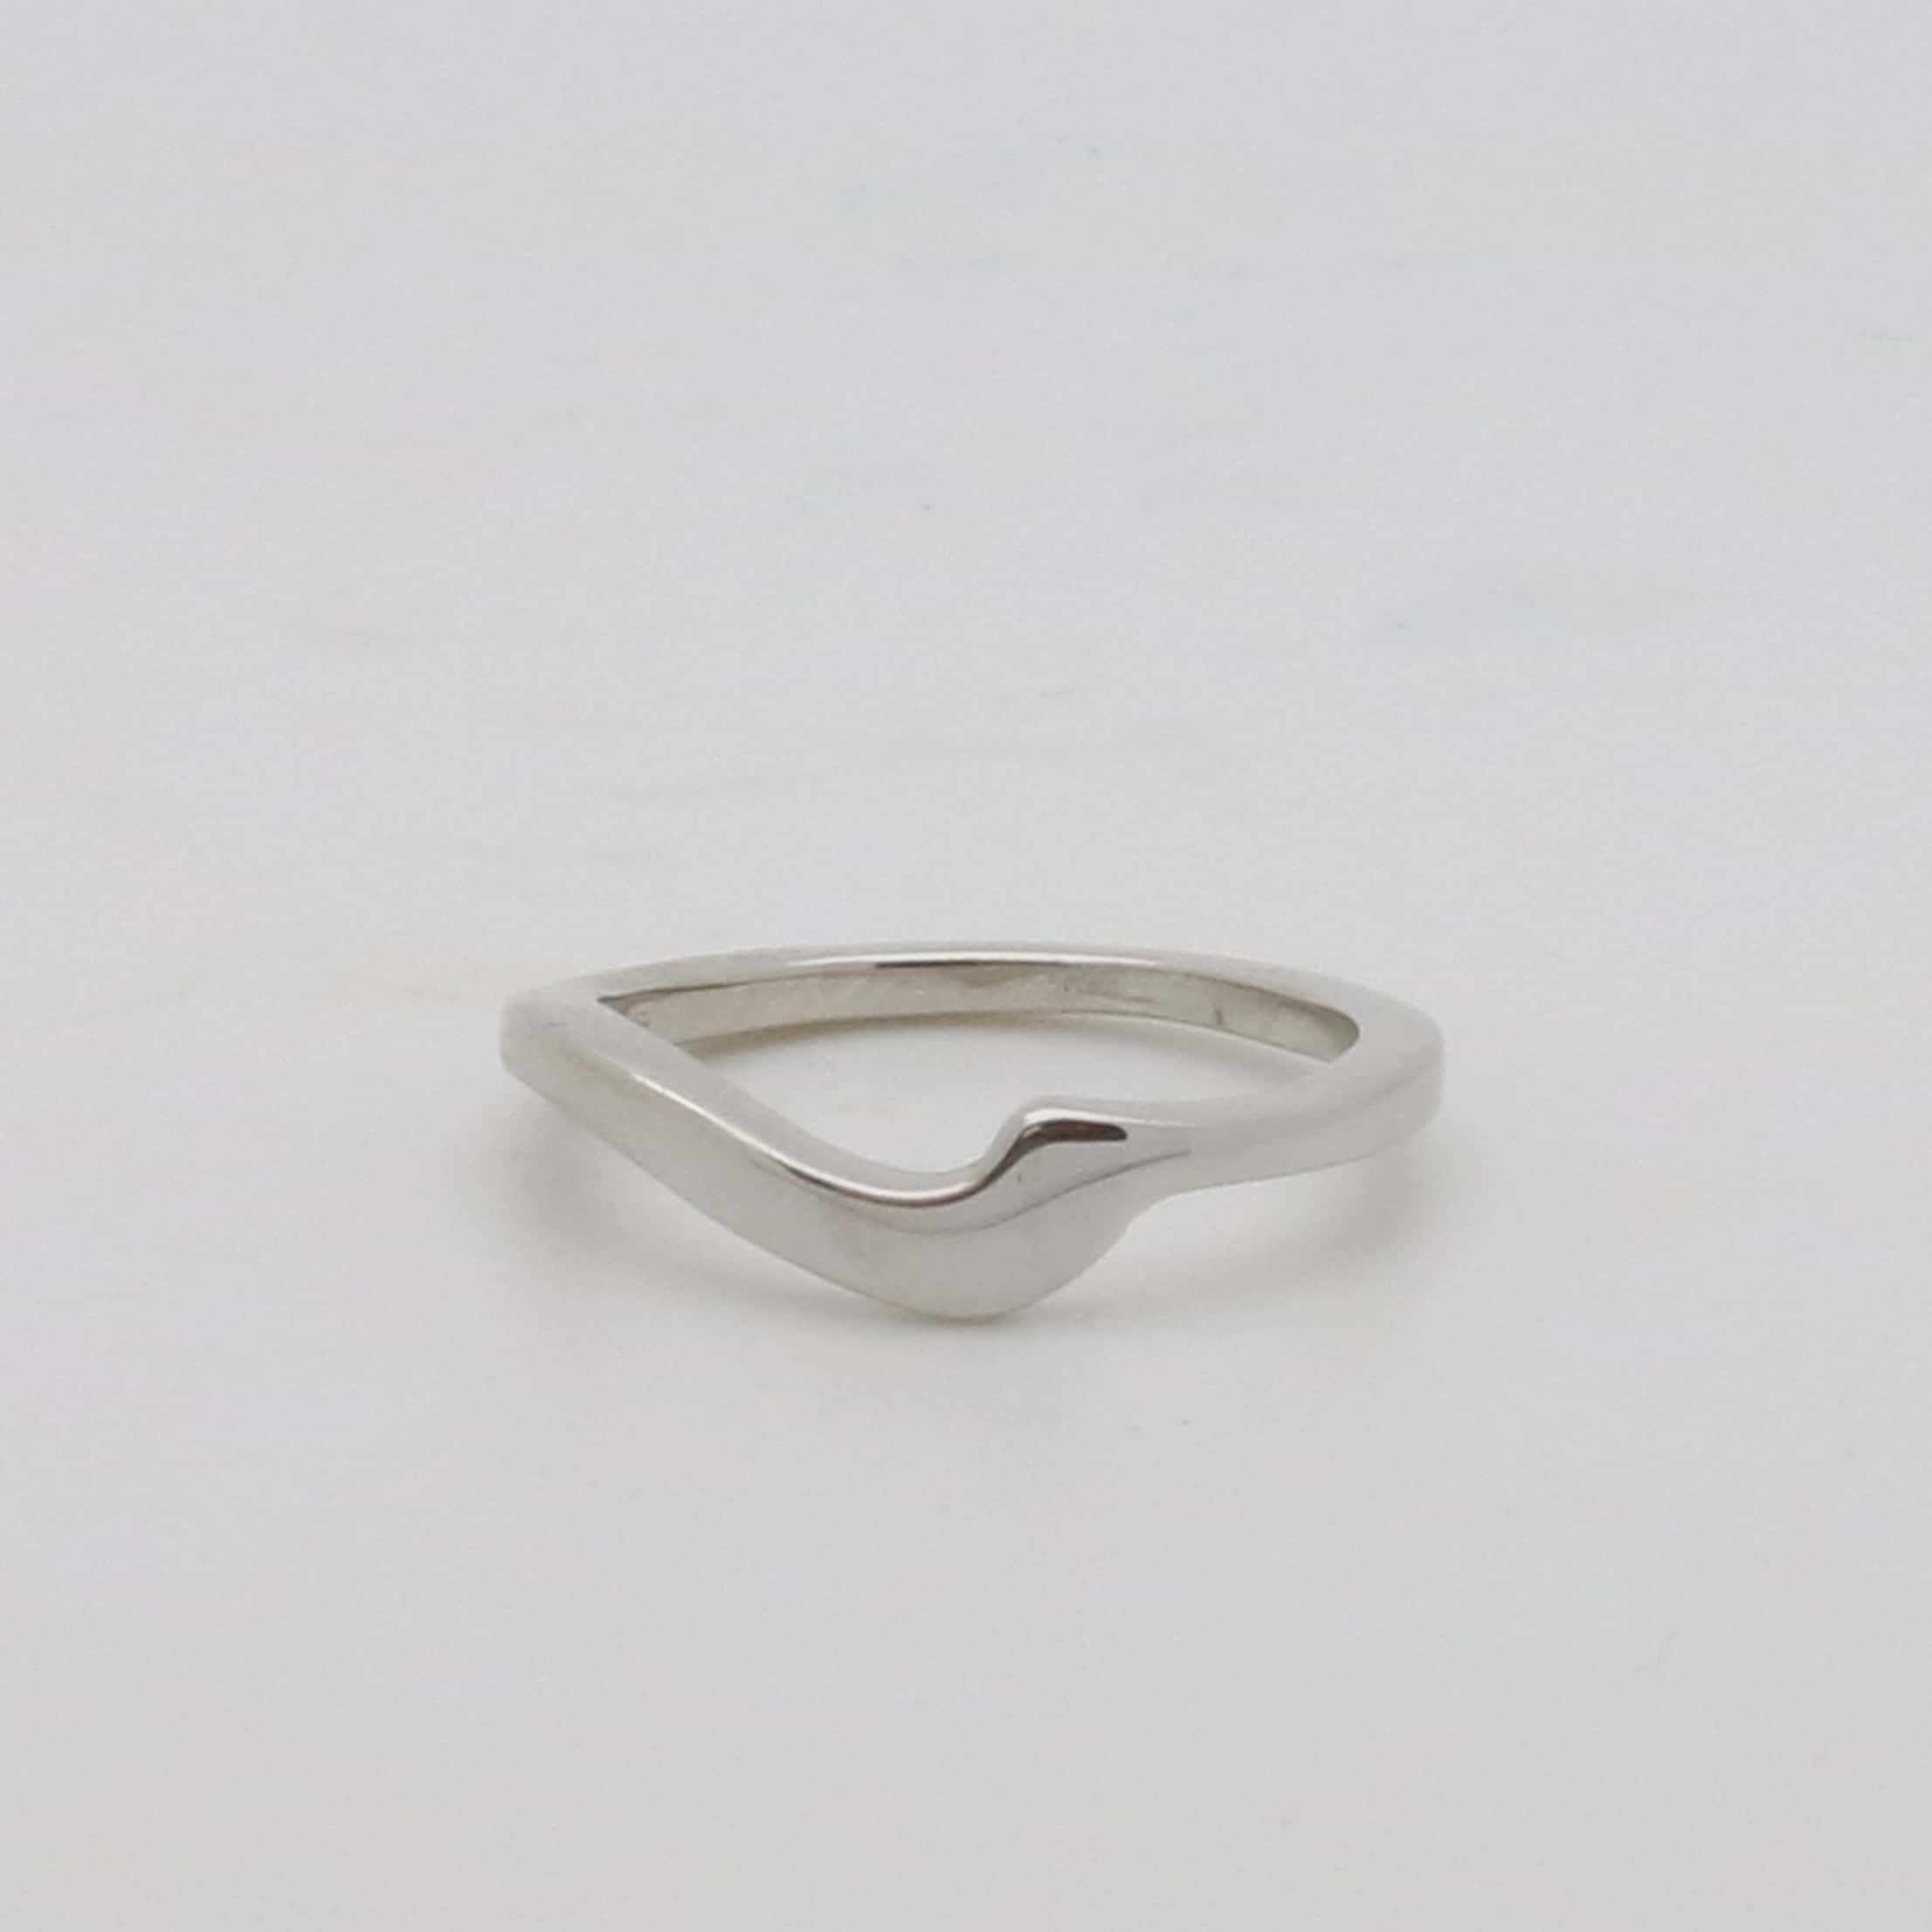 White gold bespoke shaped wedding ring